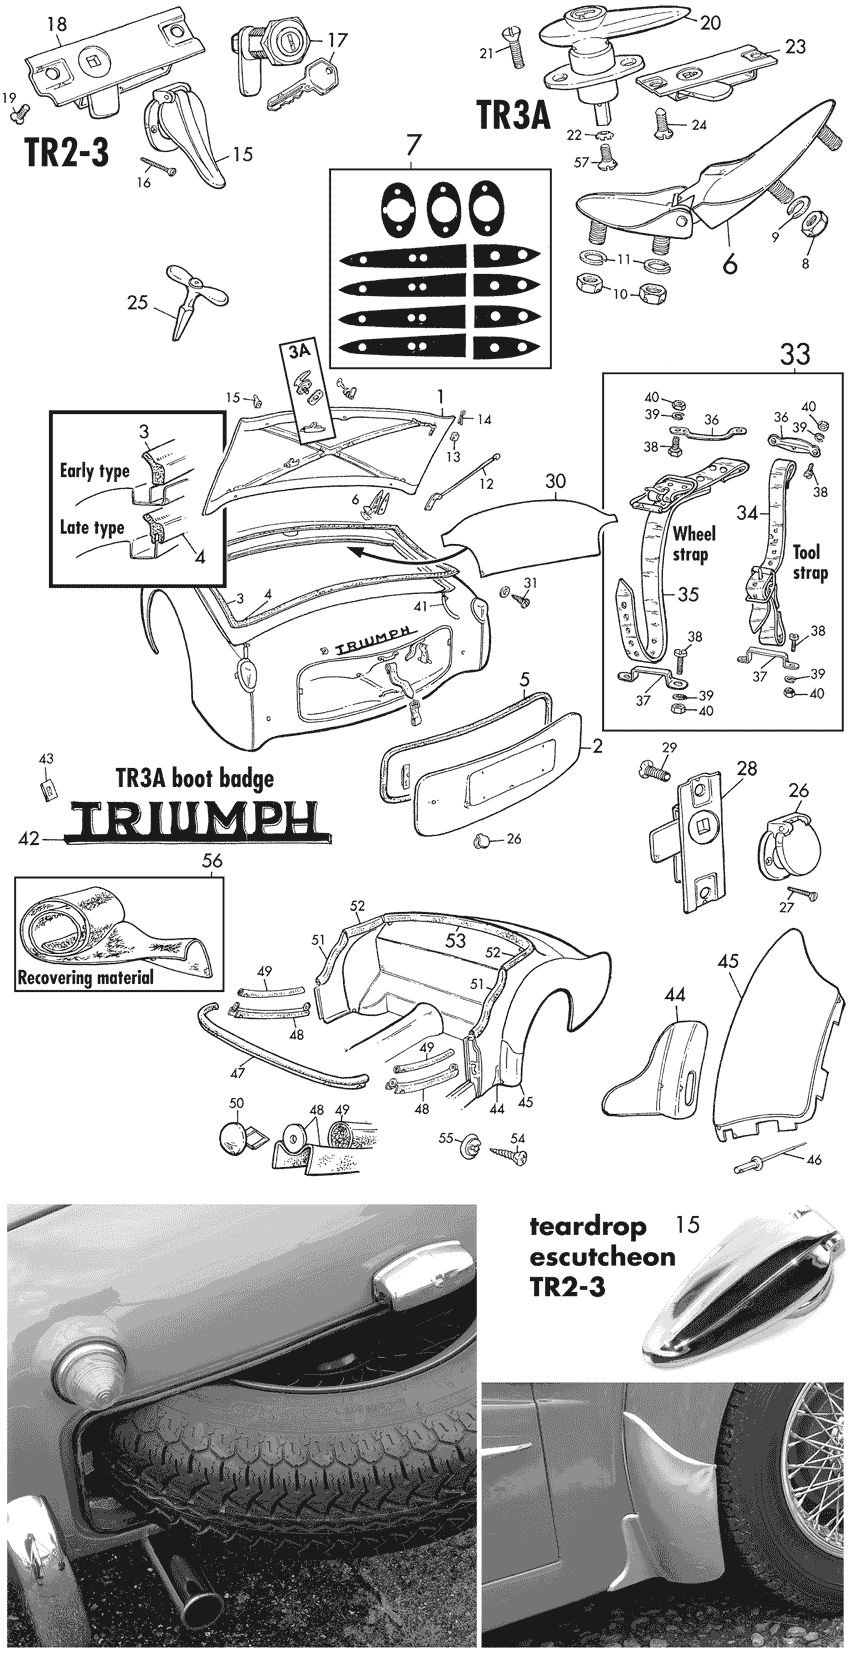 Triumph TR2-3-3A-4-4A 1953-1967 - Door panels,fenders, body parts - TR2-3A boot & cockpit - 1